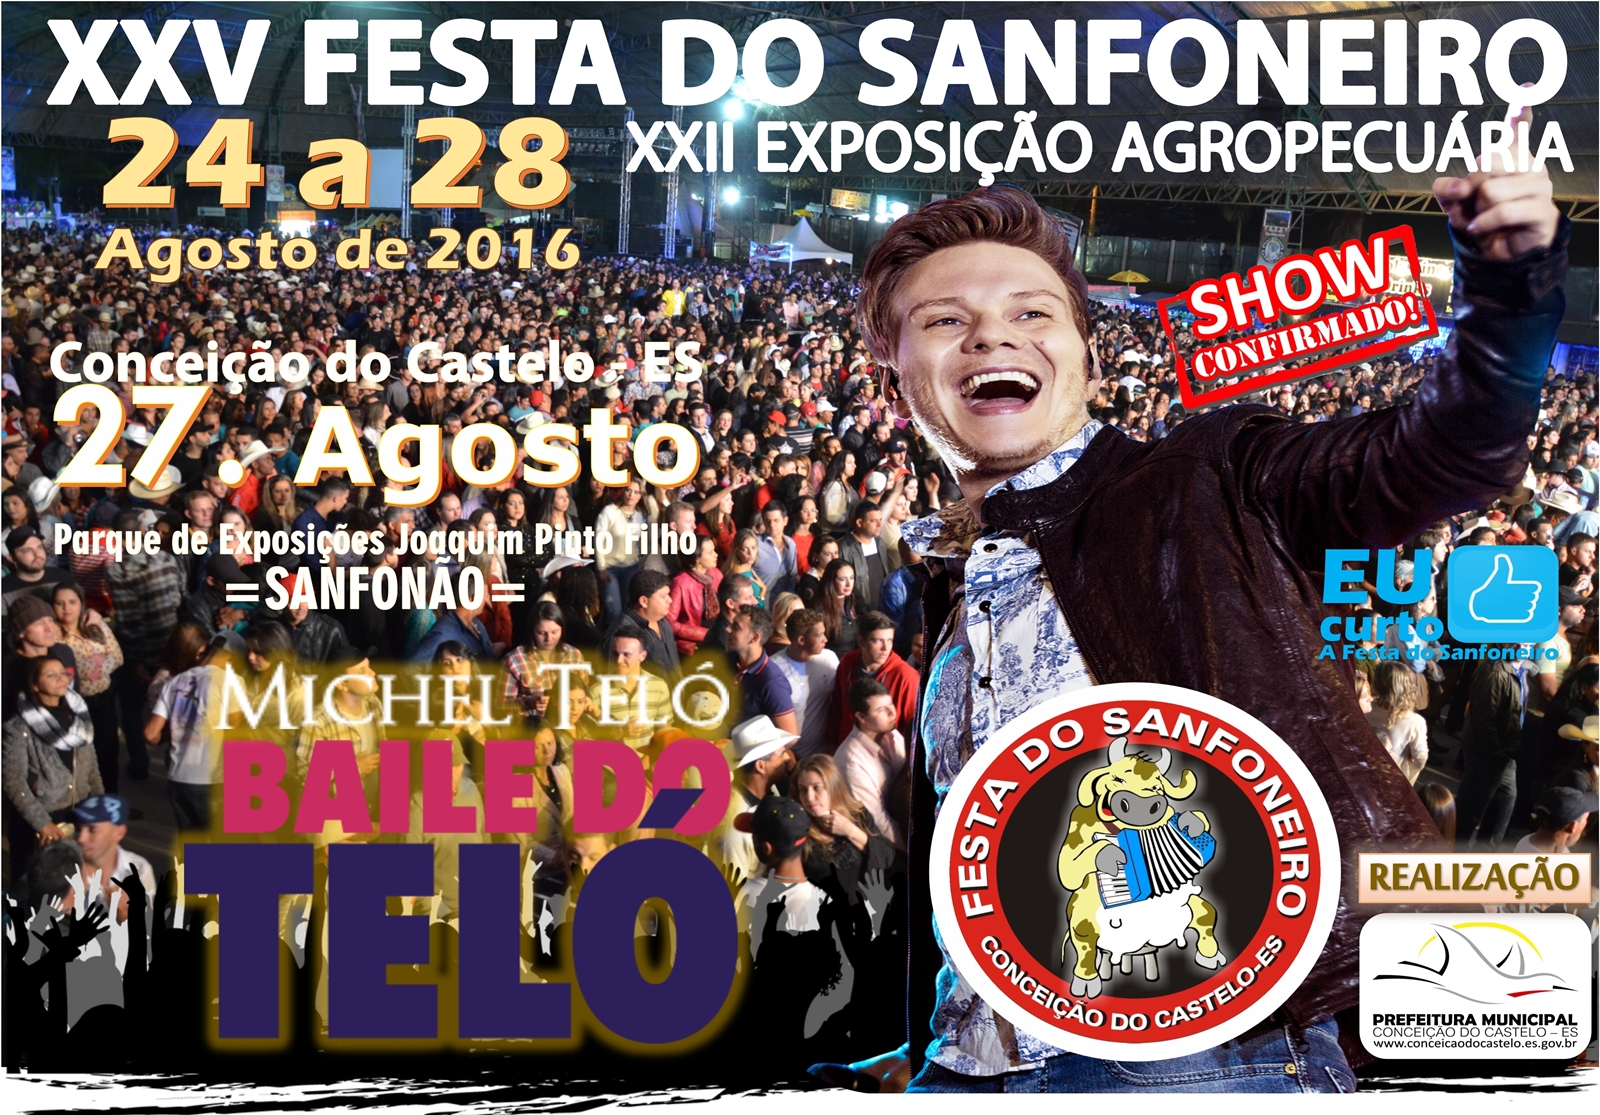 Cantor Michel Teló é a grande atração para 25ª Festa do Sanfoneiro e 22ª Exposição Agropecuária em 2016